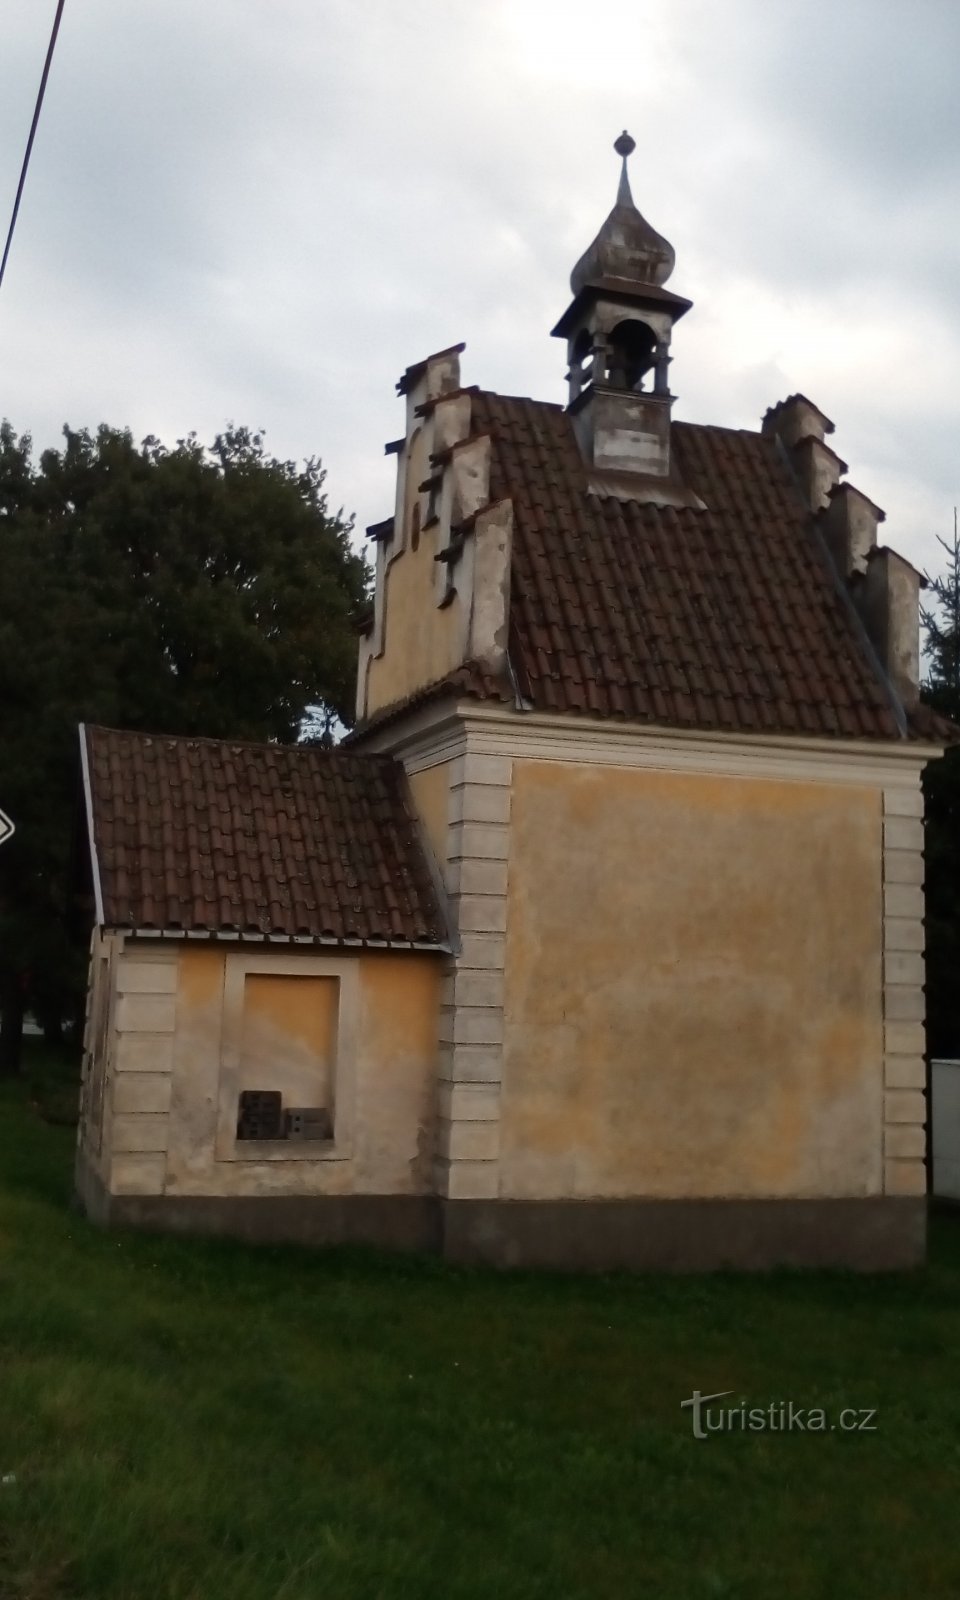 Kapel in Popkovice